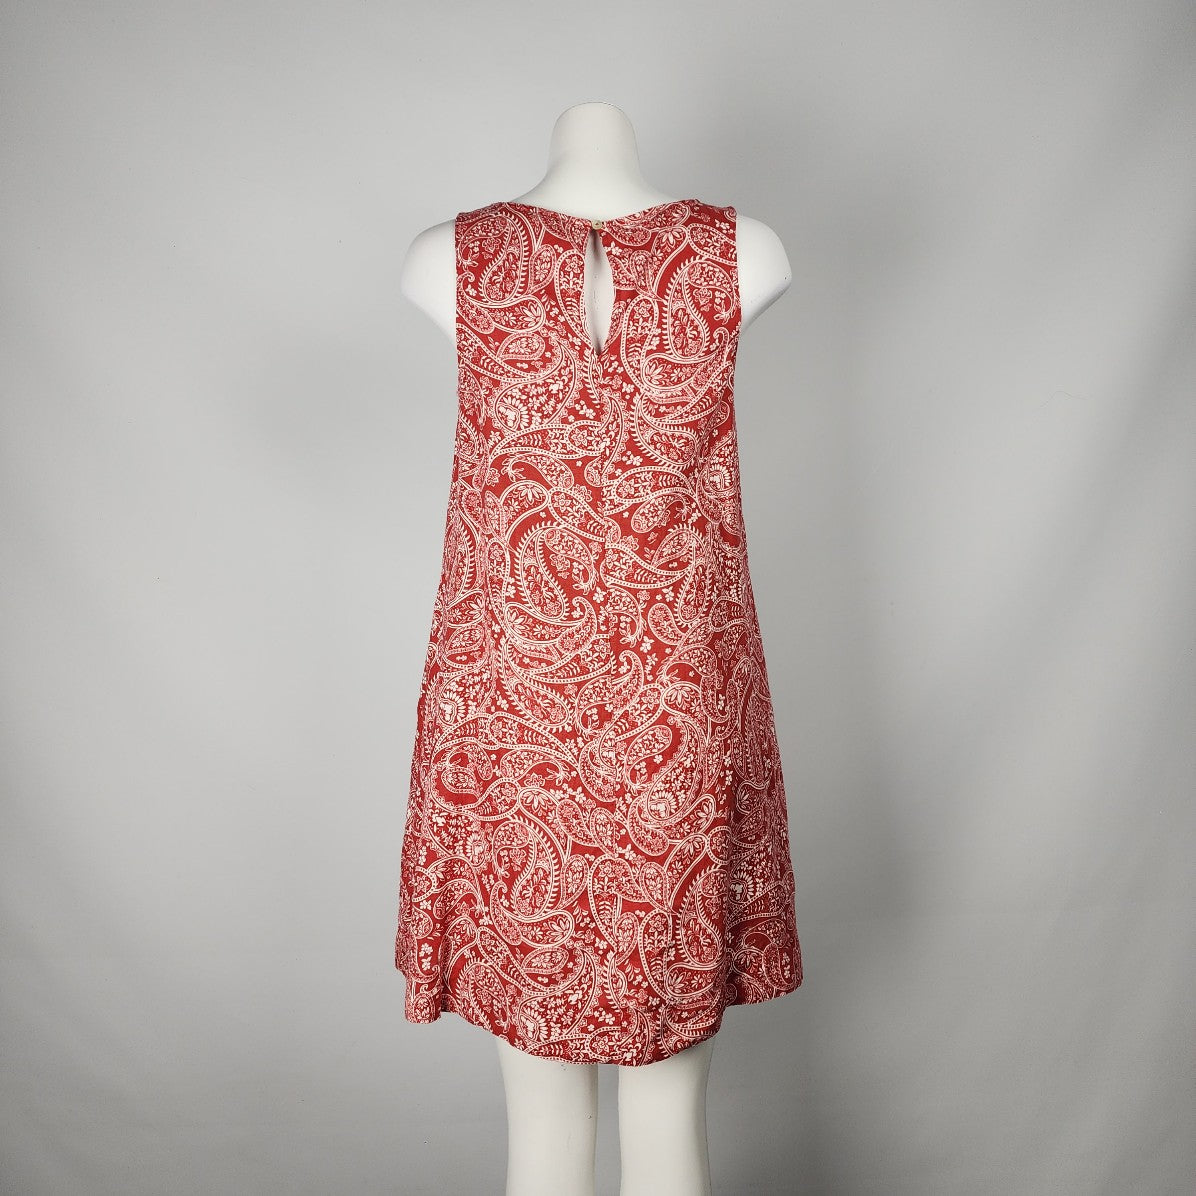 Rachel Zoe Red Floral Linen A-Line Dress Size S